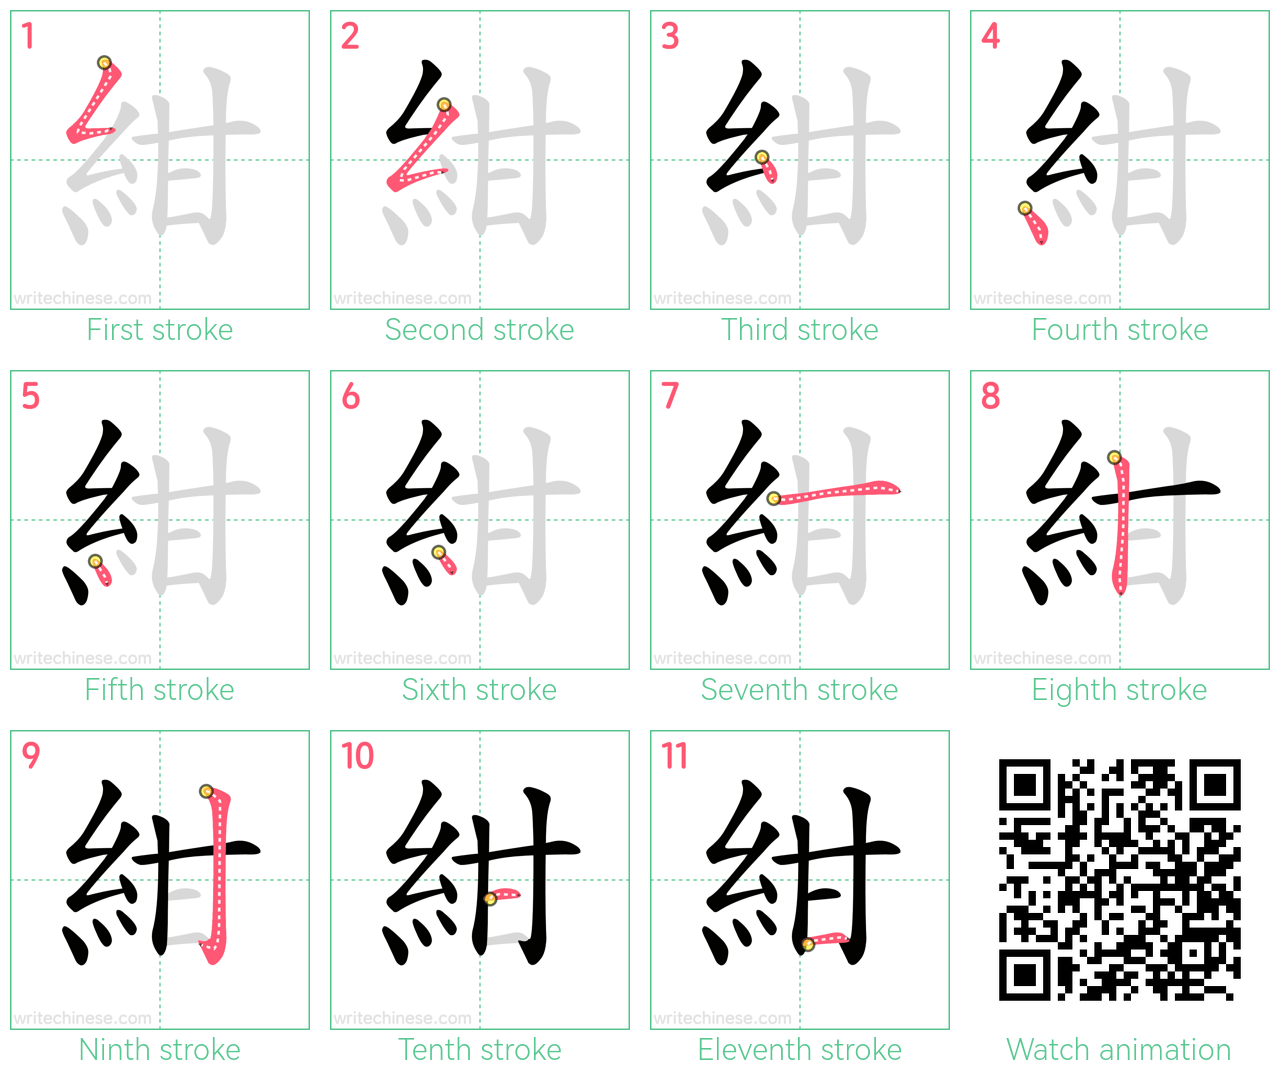 紺 step-by-step stroke order diagrams